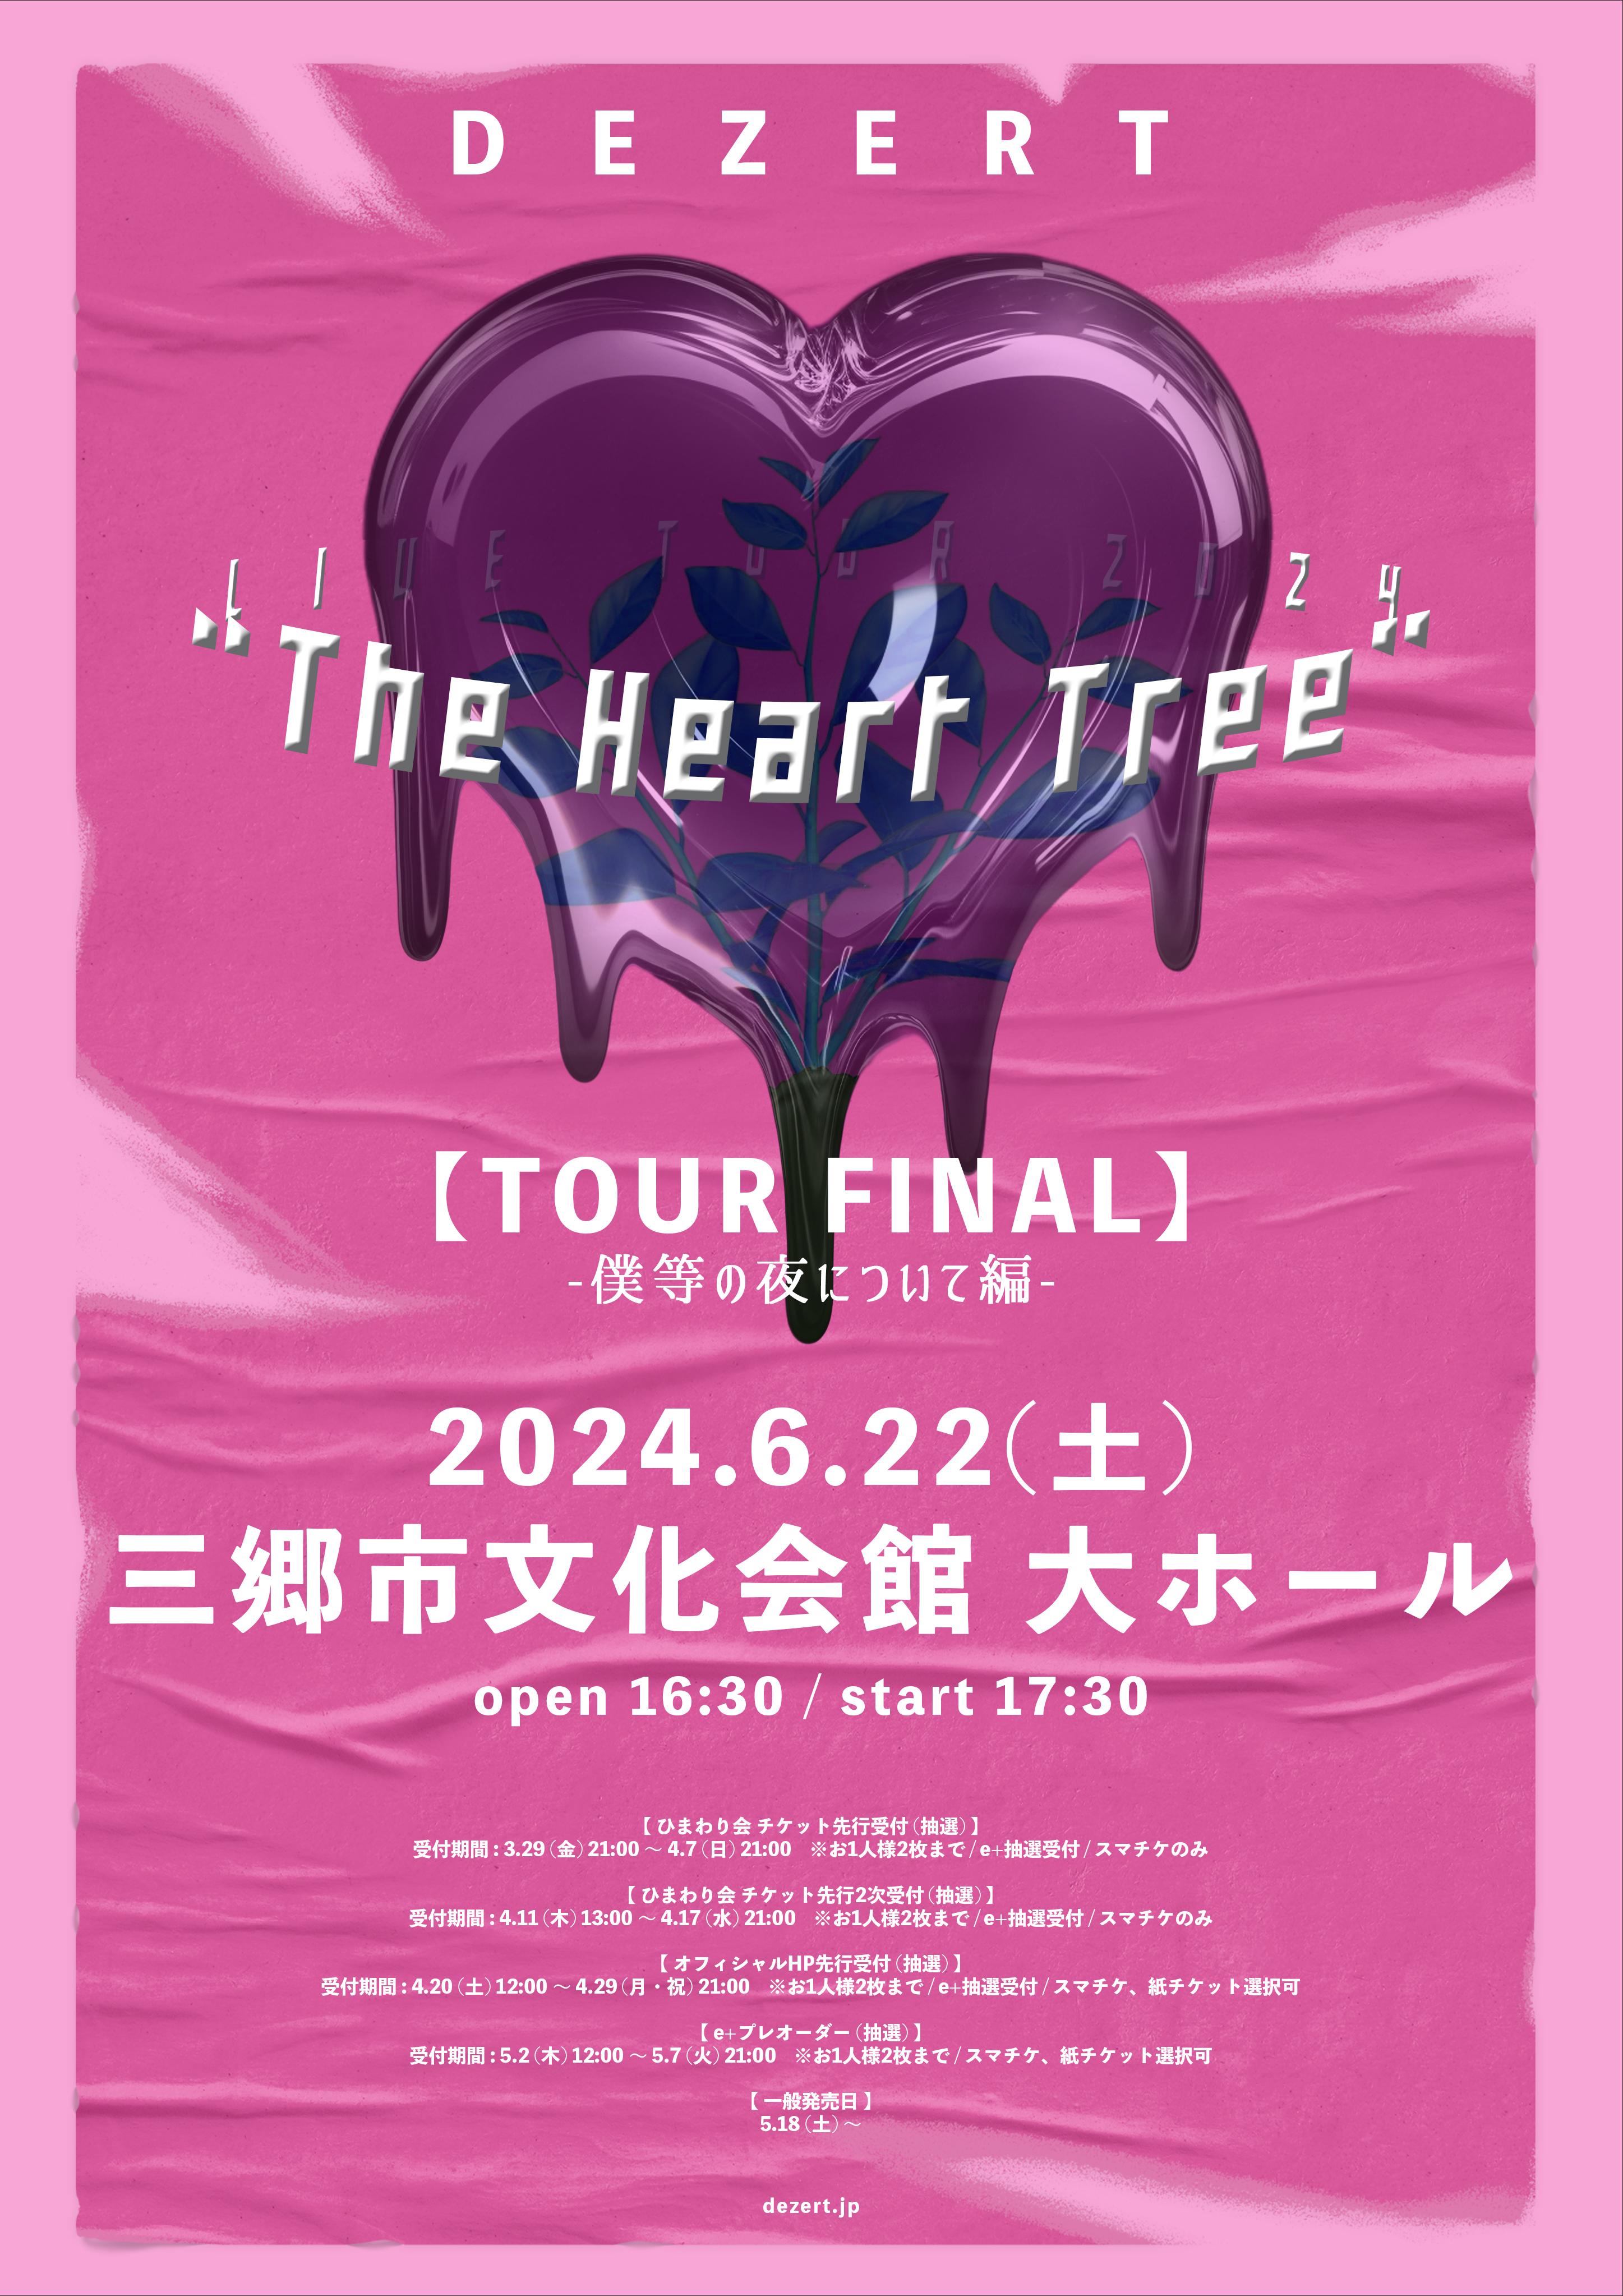 DEZERT LIVE TOUR 2024 “The Heart Tree” 【TOUR FINAL】 -僕等の夜